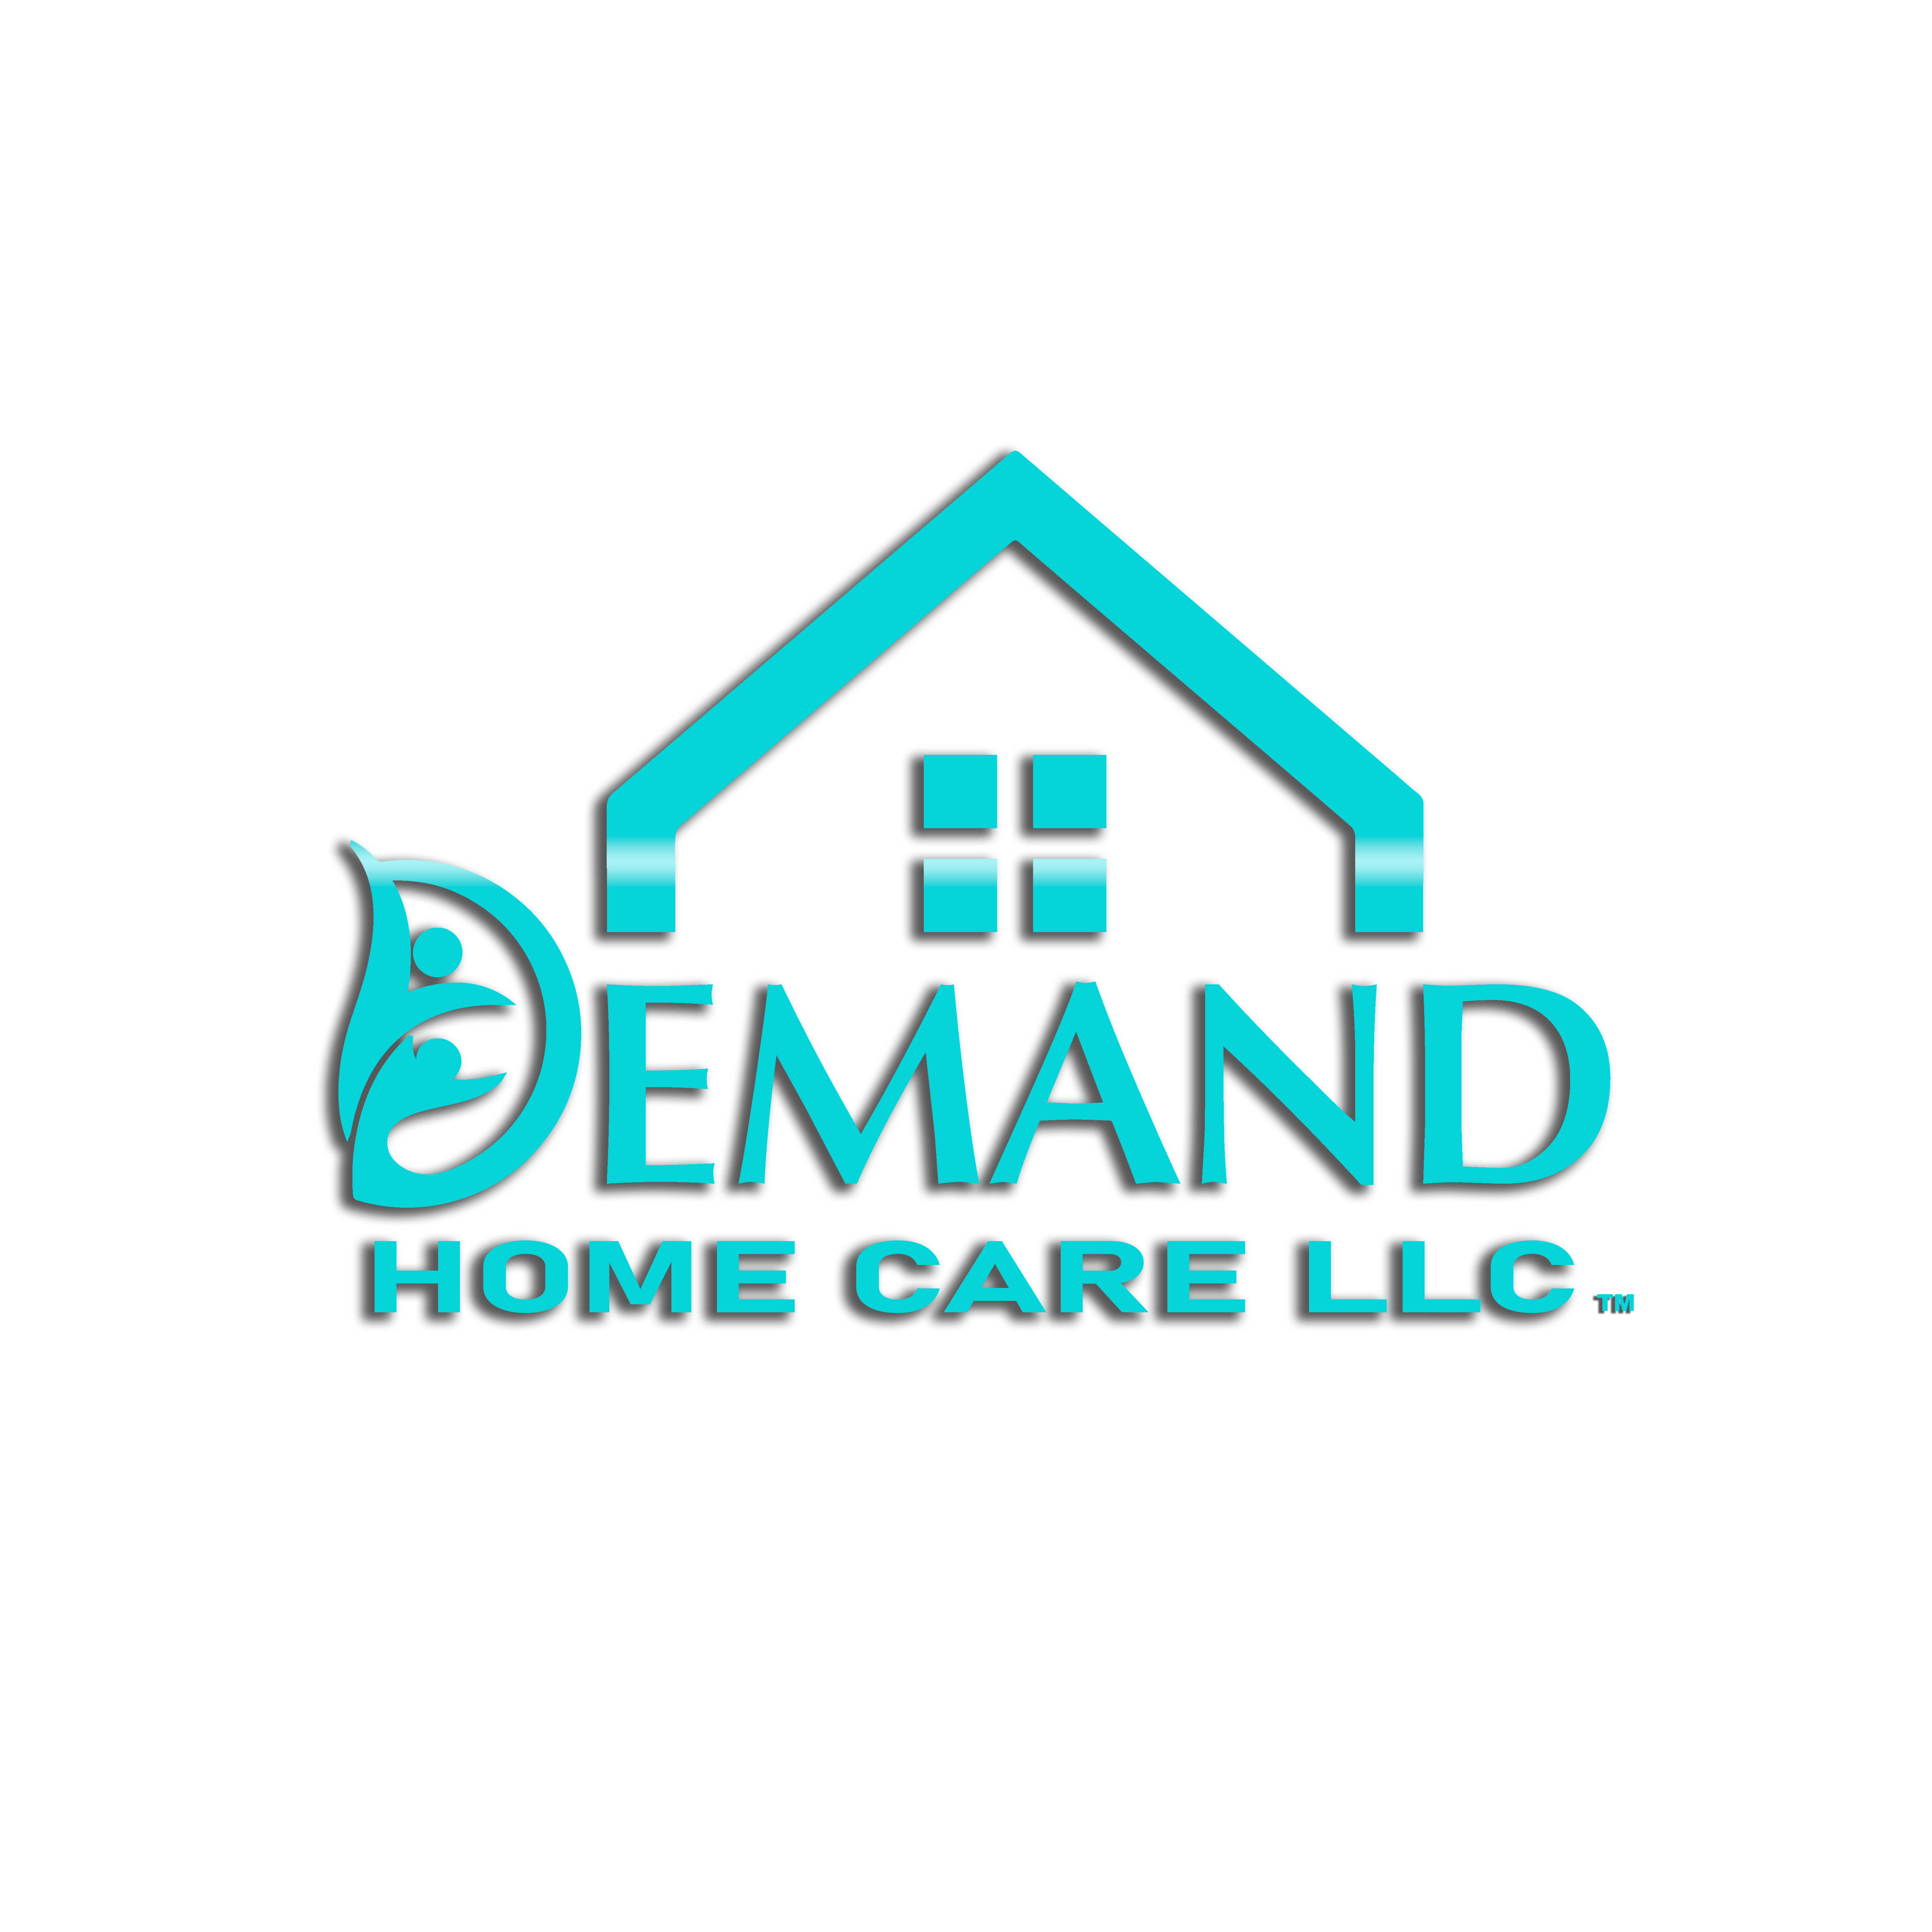 A agência Shedless Media, de United States, ajudou Demand Home care a expandir seus negócios usando SEO e marketing digital